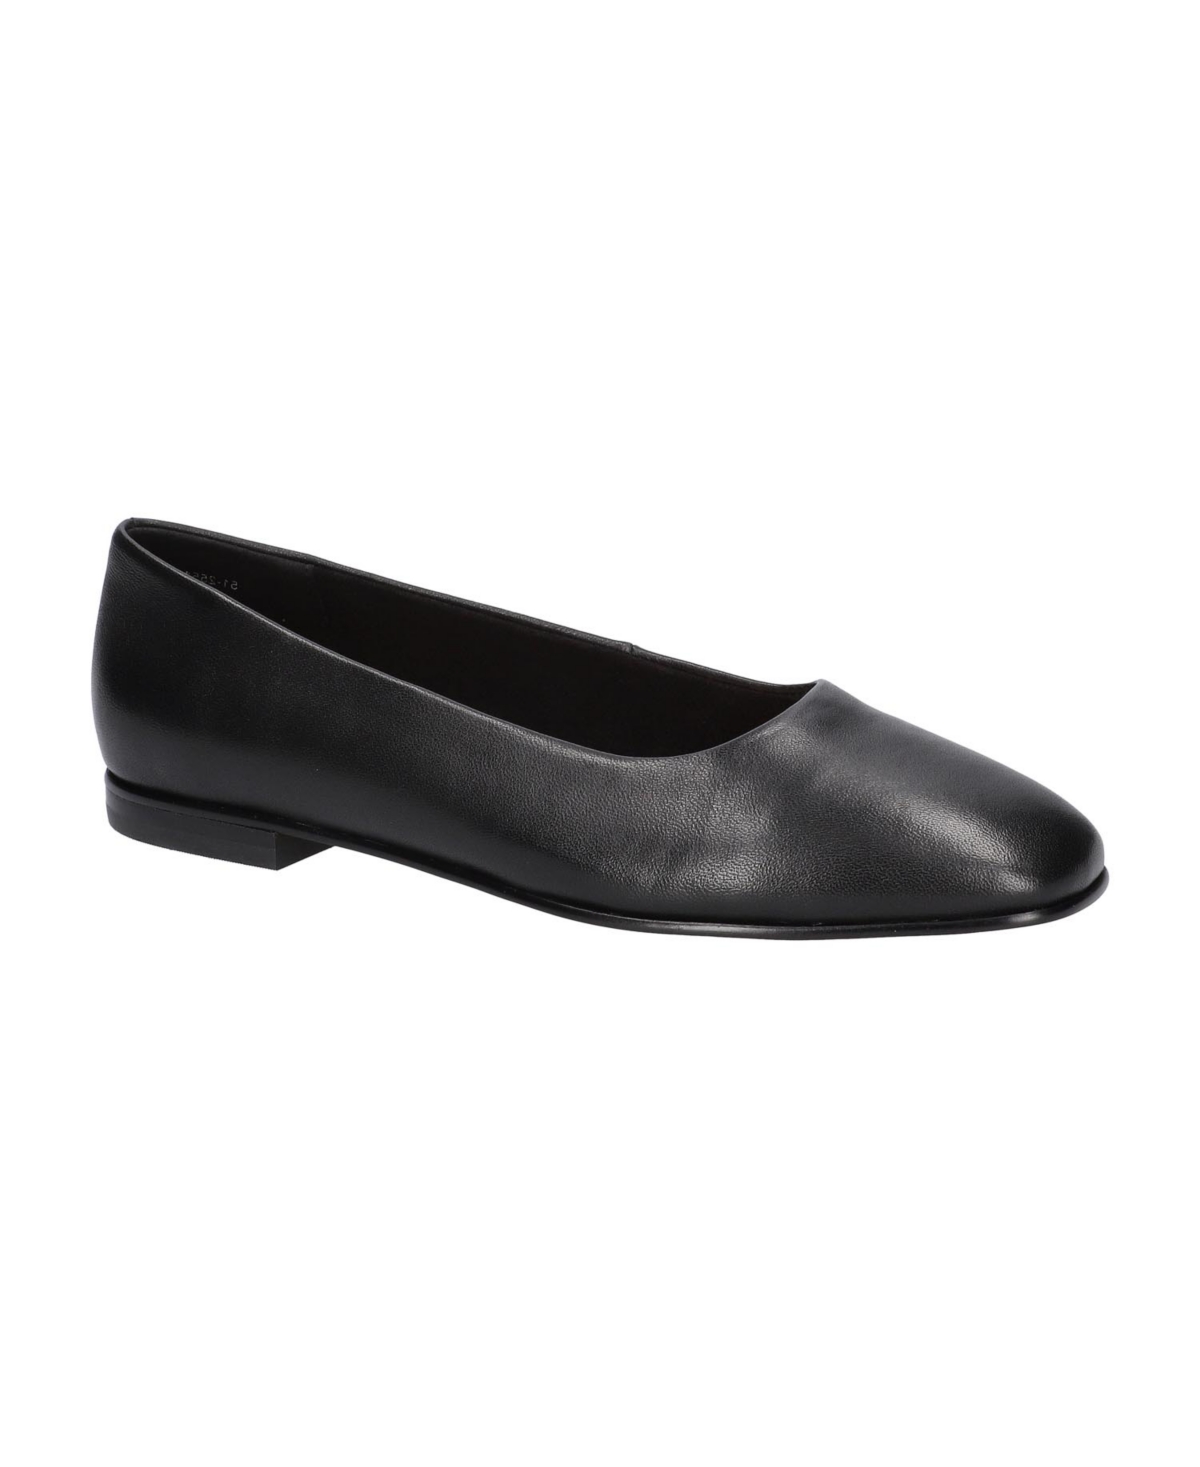 Women's Kimiko Square Toe Flats - Black Faux Leather